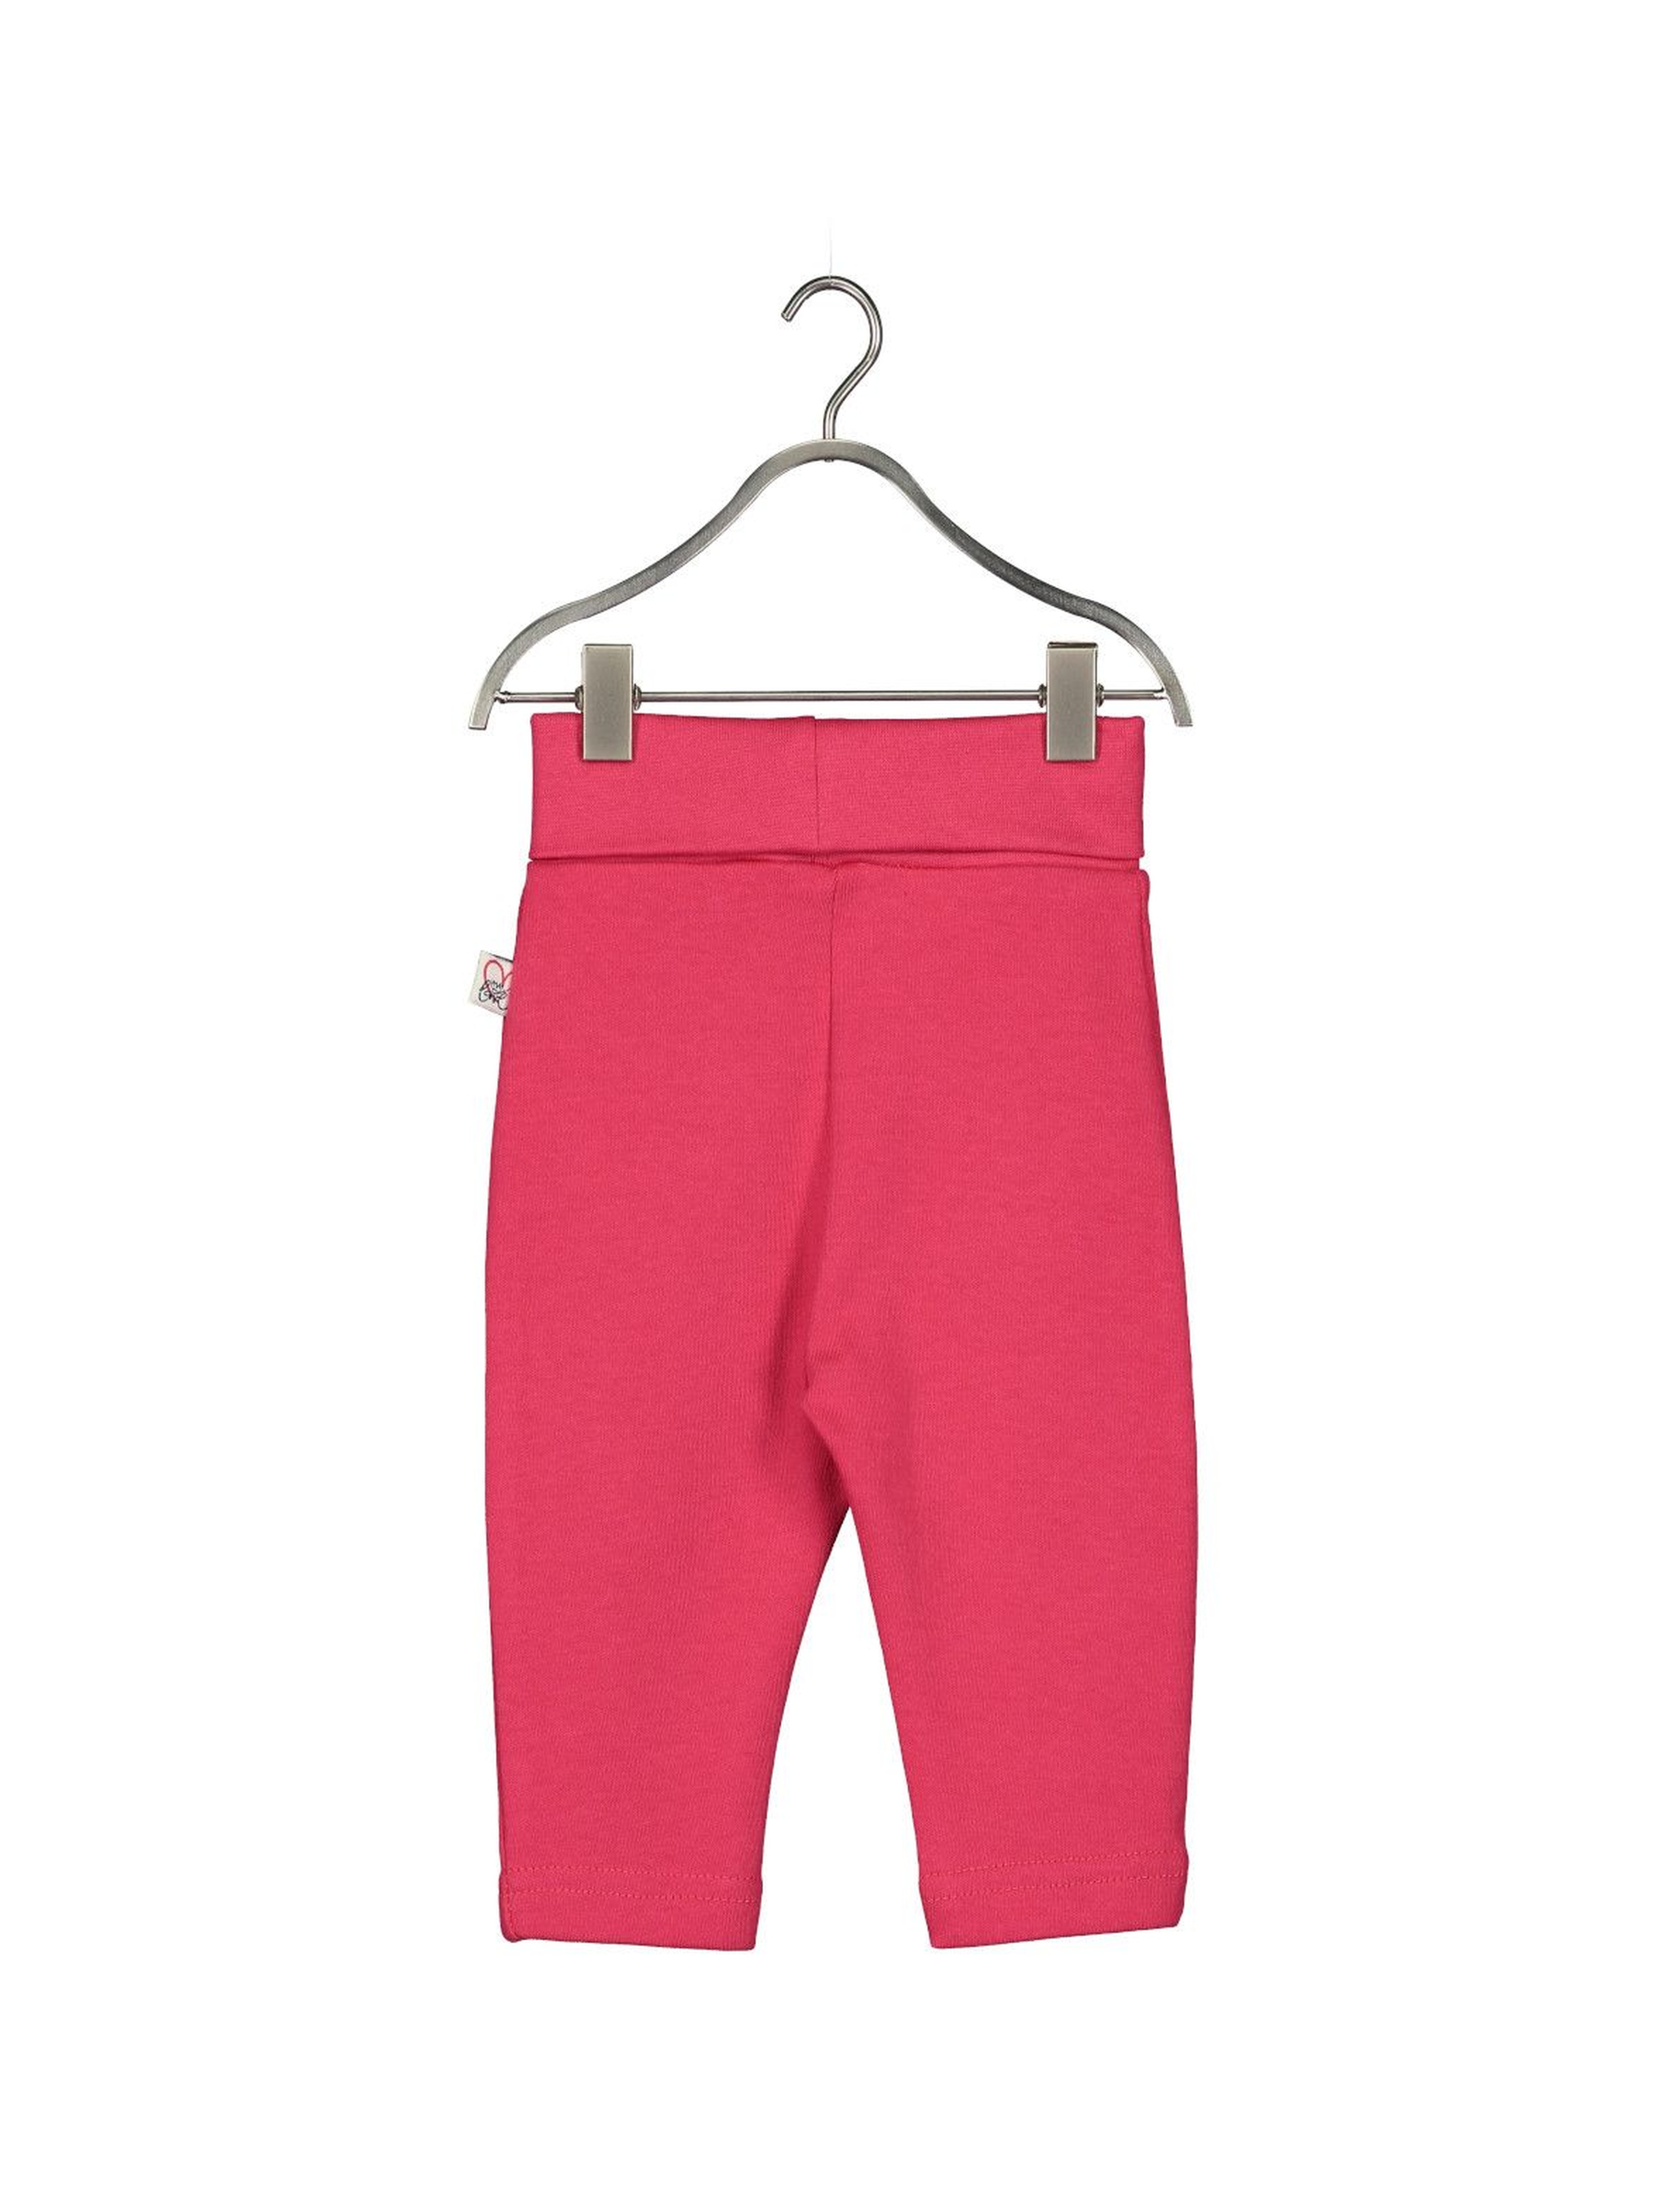 Dresowe spodnie dla niemowlaka- czerwone z serduszkami na kolanach